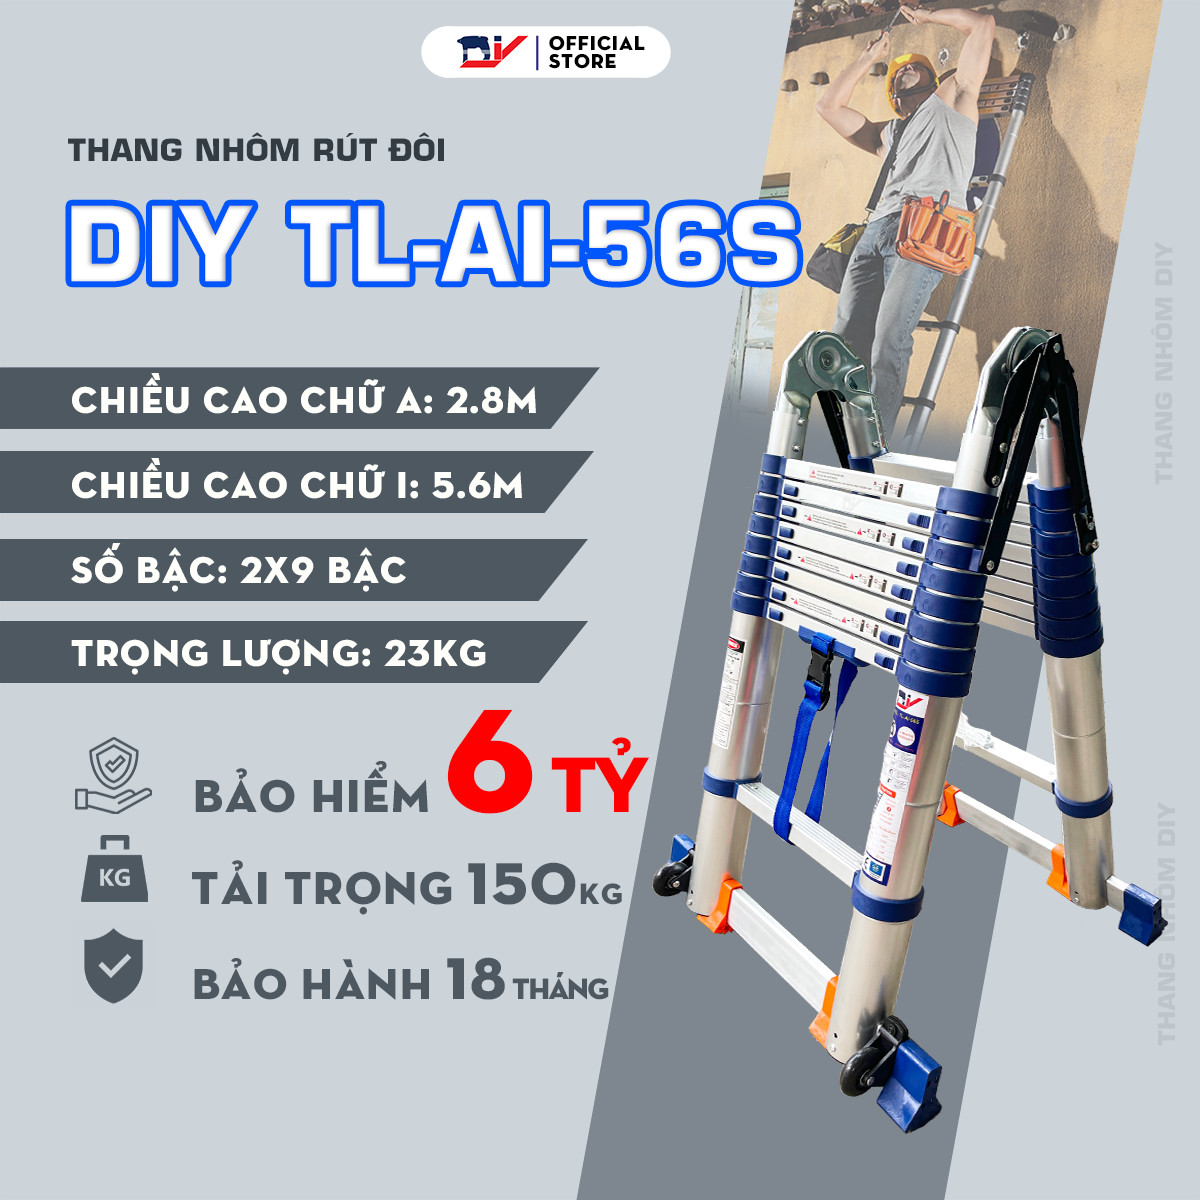 Thang nhôm rút đôi DIY TL-AI-56S chiều cao sử dụng tối đa chữ A 2.8m chữ I 5.6m - tiêu chuẩn chất lượng an toàn Châu Âu